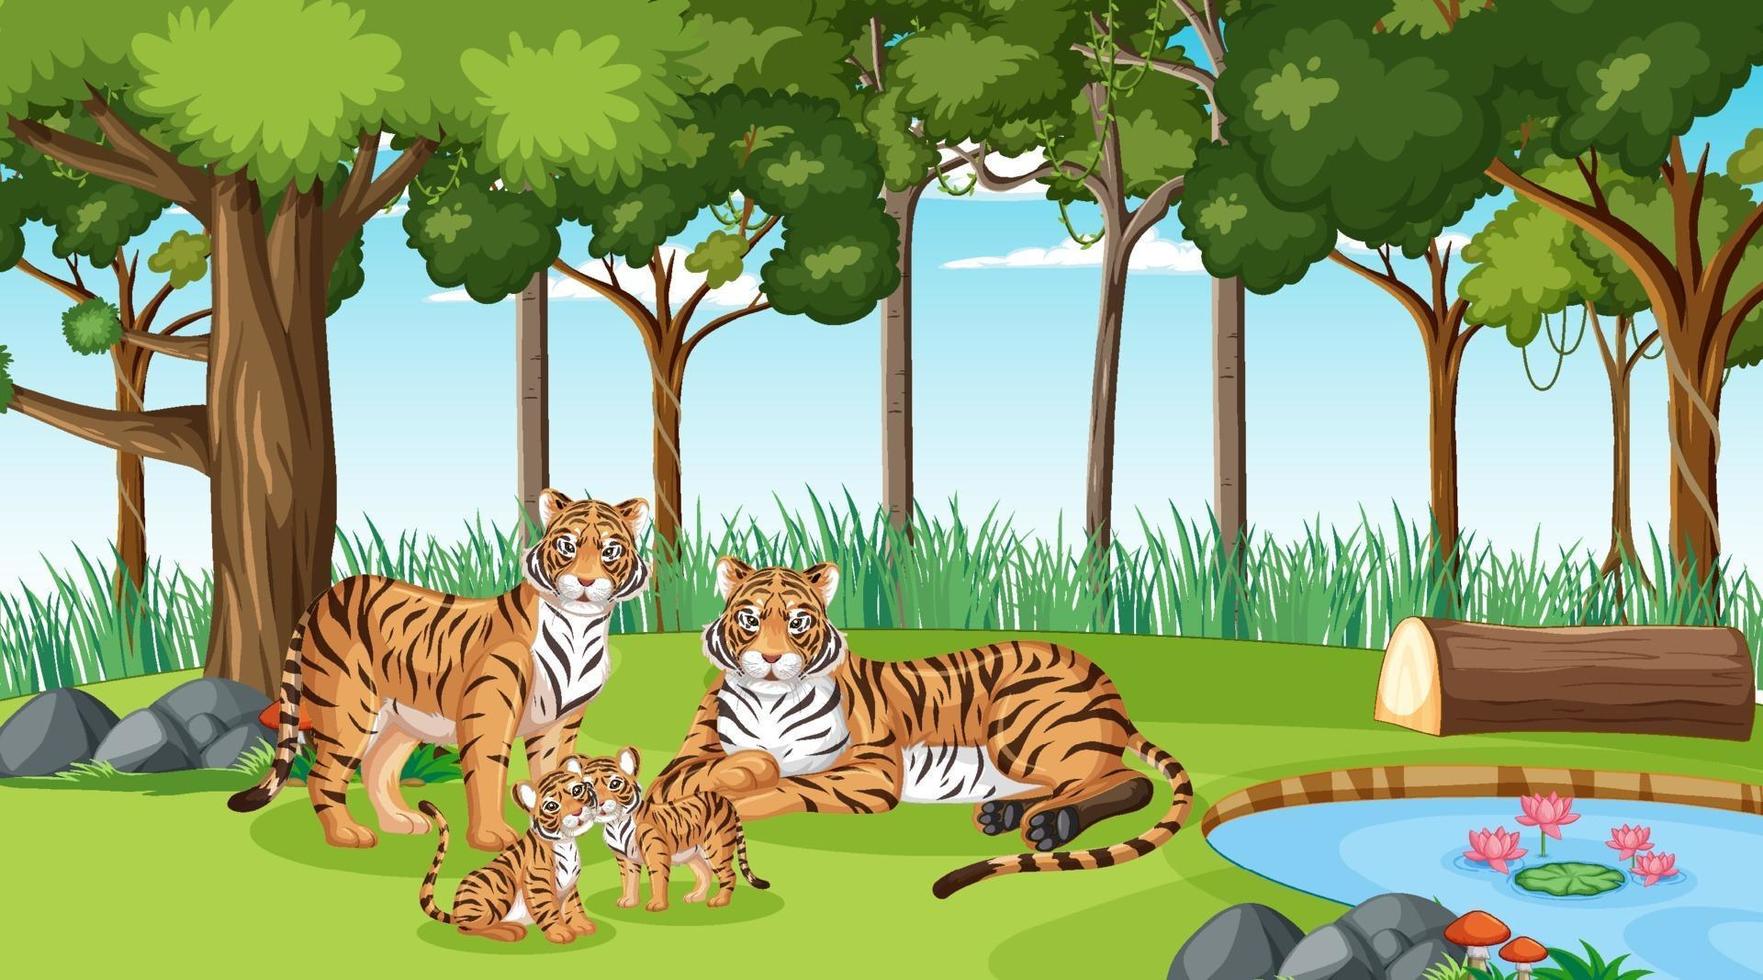 famille de tigres dans une scène de forêt ou de forêt tropicale avec de nombreux arbres vecteur